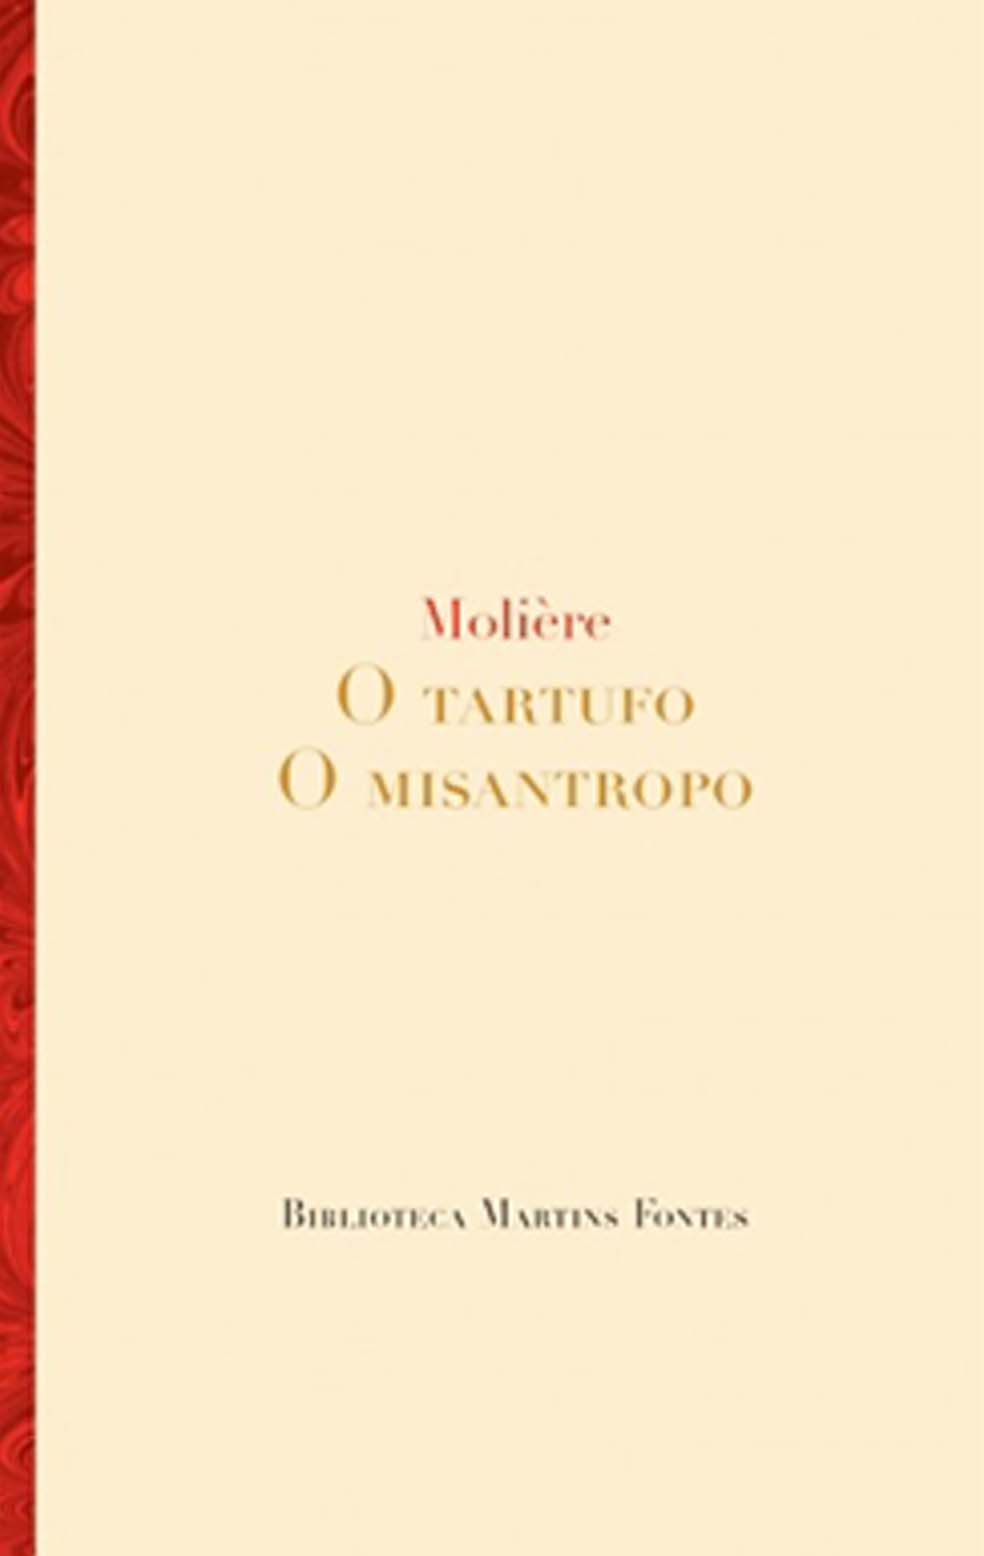 Tartufo, O / Misantropo, O  - Martins Fontes